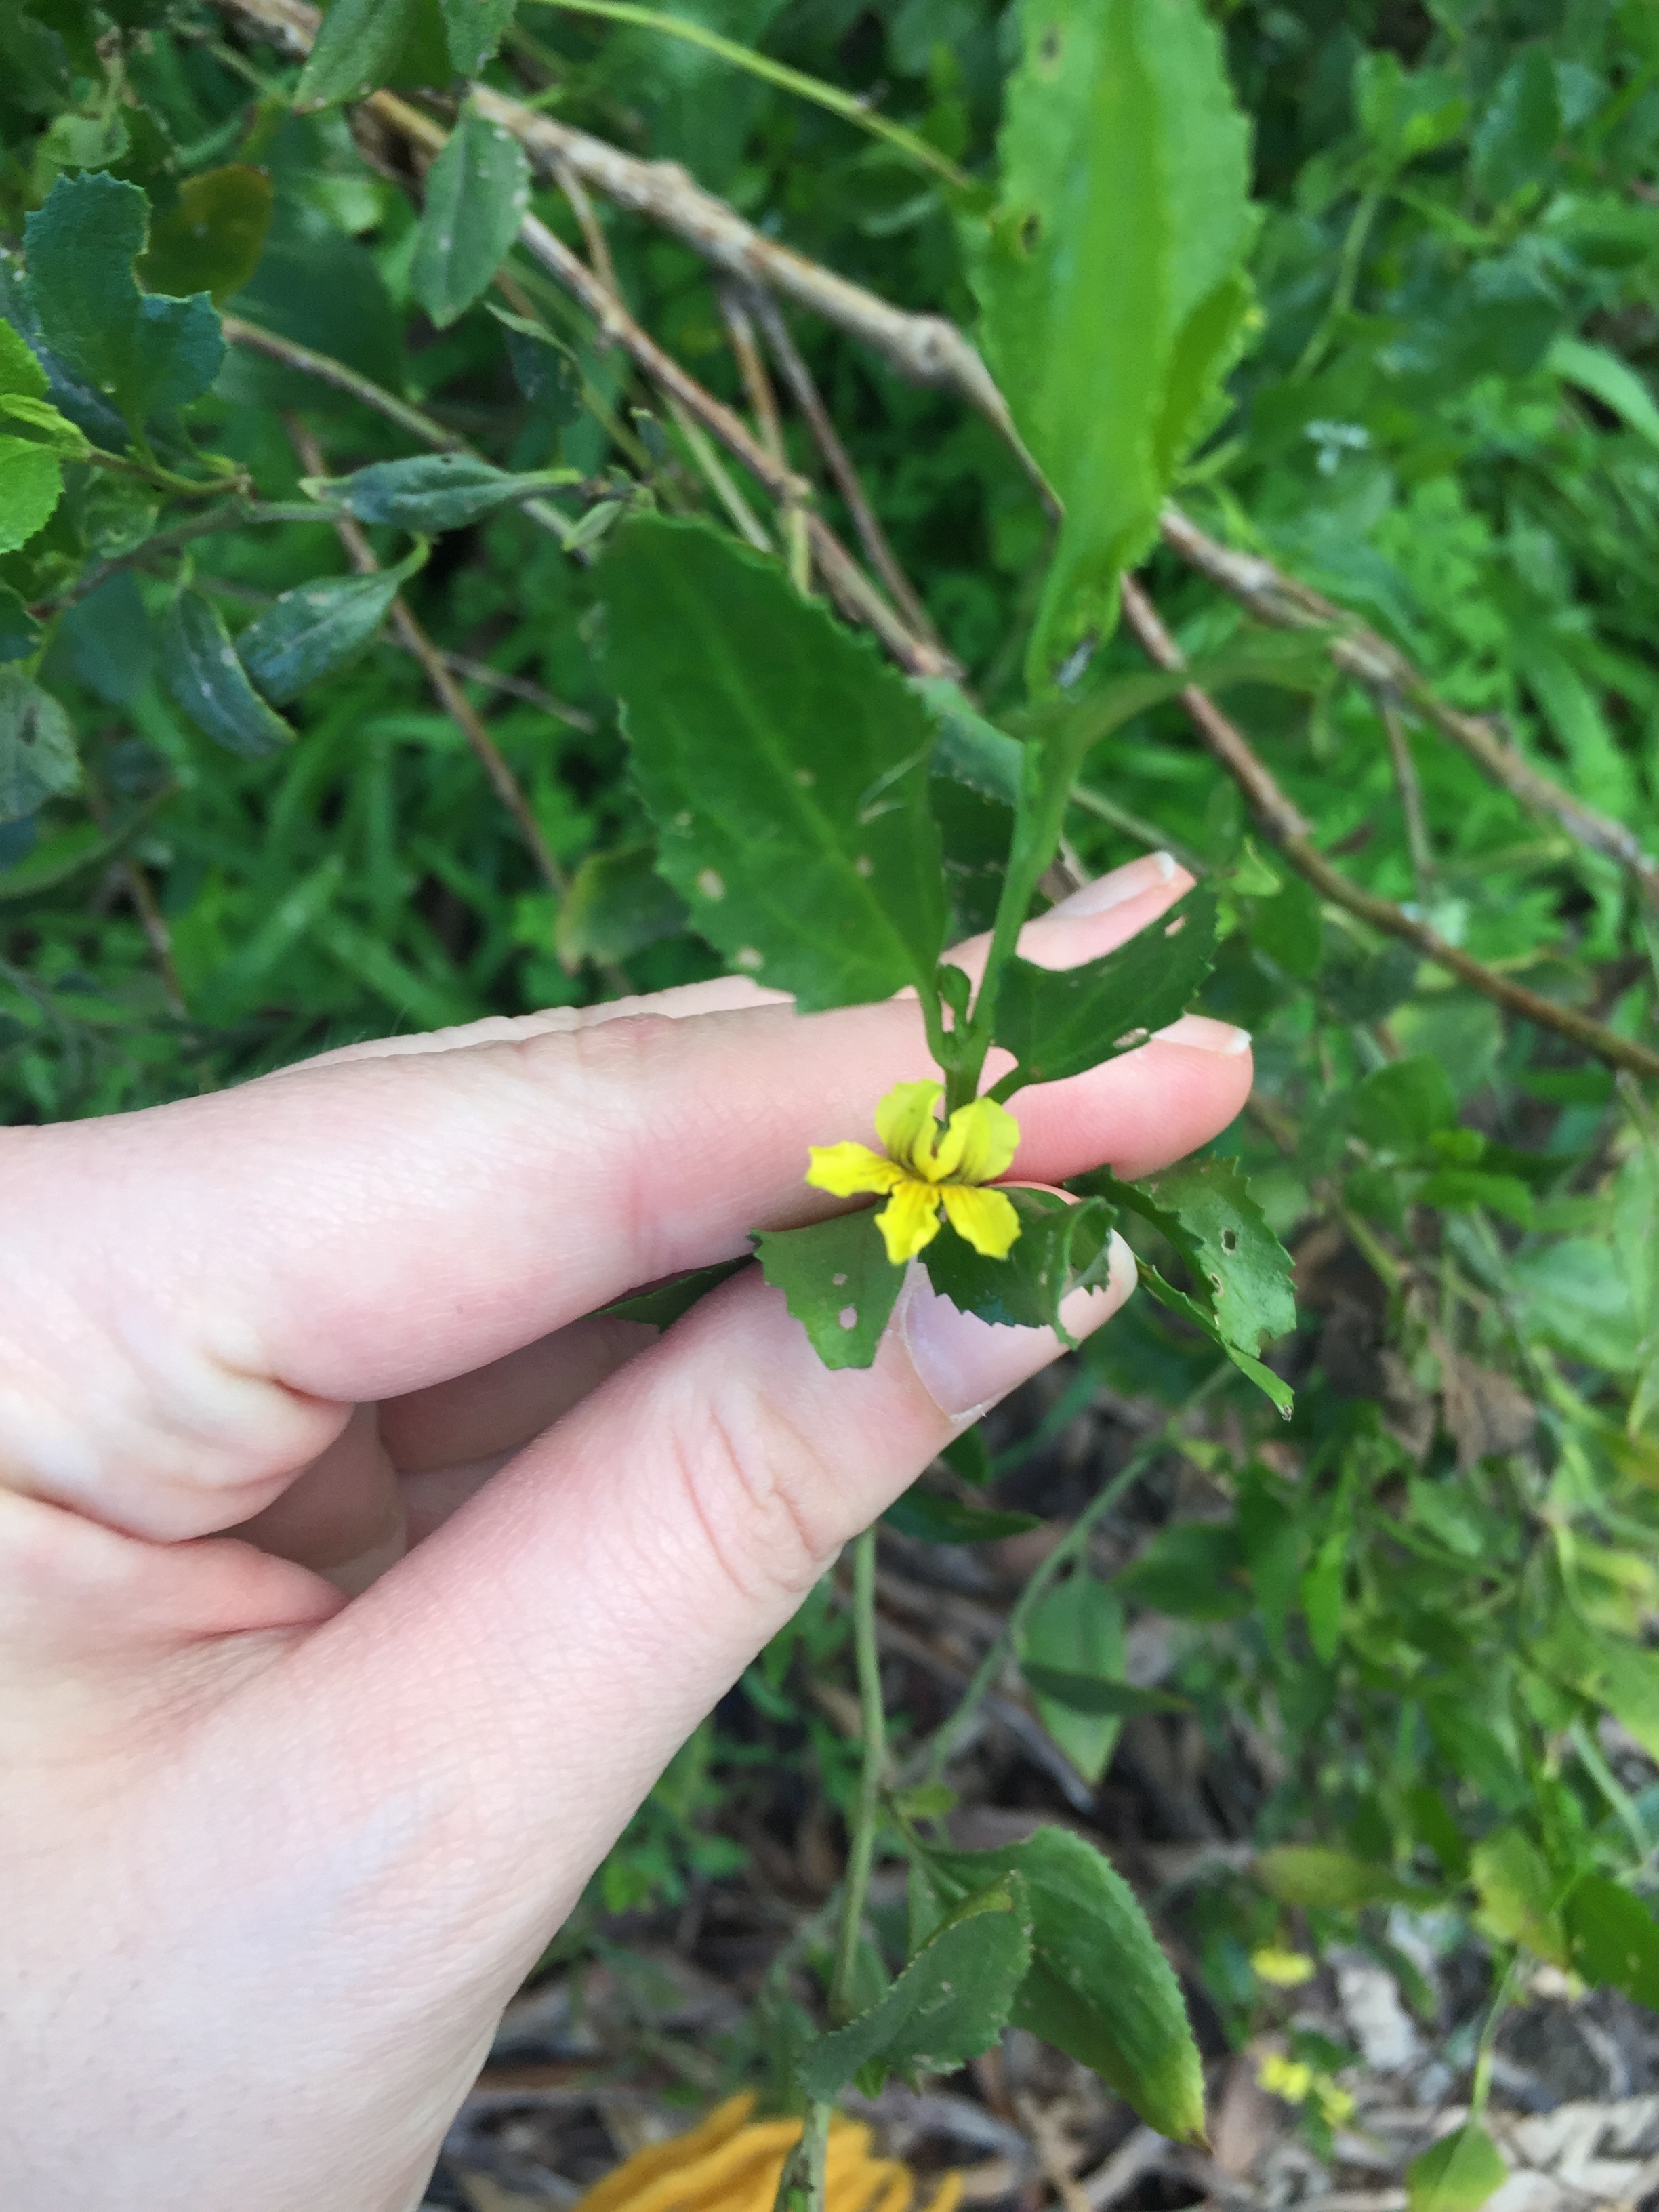 Little yellow flowers - Ask an Expert